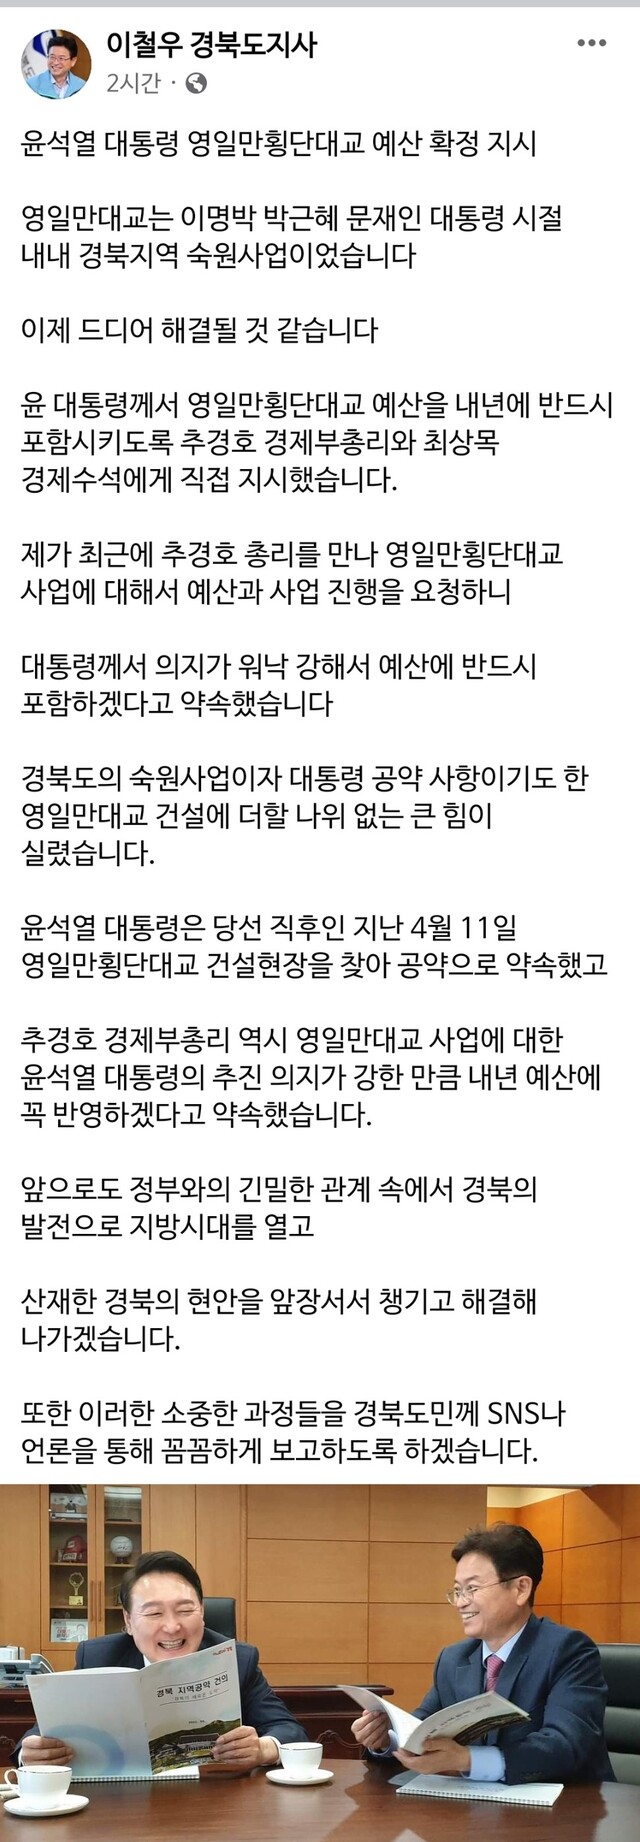 ▲ 이철우 경북도지사는 23일 자신의 SNS(페이스북)를 통해 ‘윤석열 대통령 영일만대교 예산 확정 지시’라는 제목의 환영의 글을 남겼다.ⓒ경북도